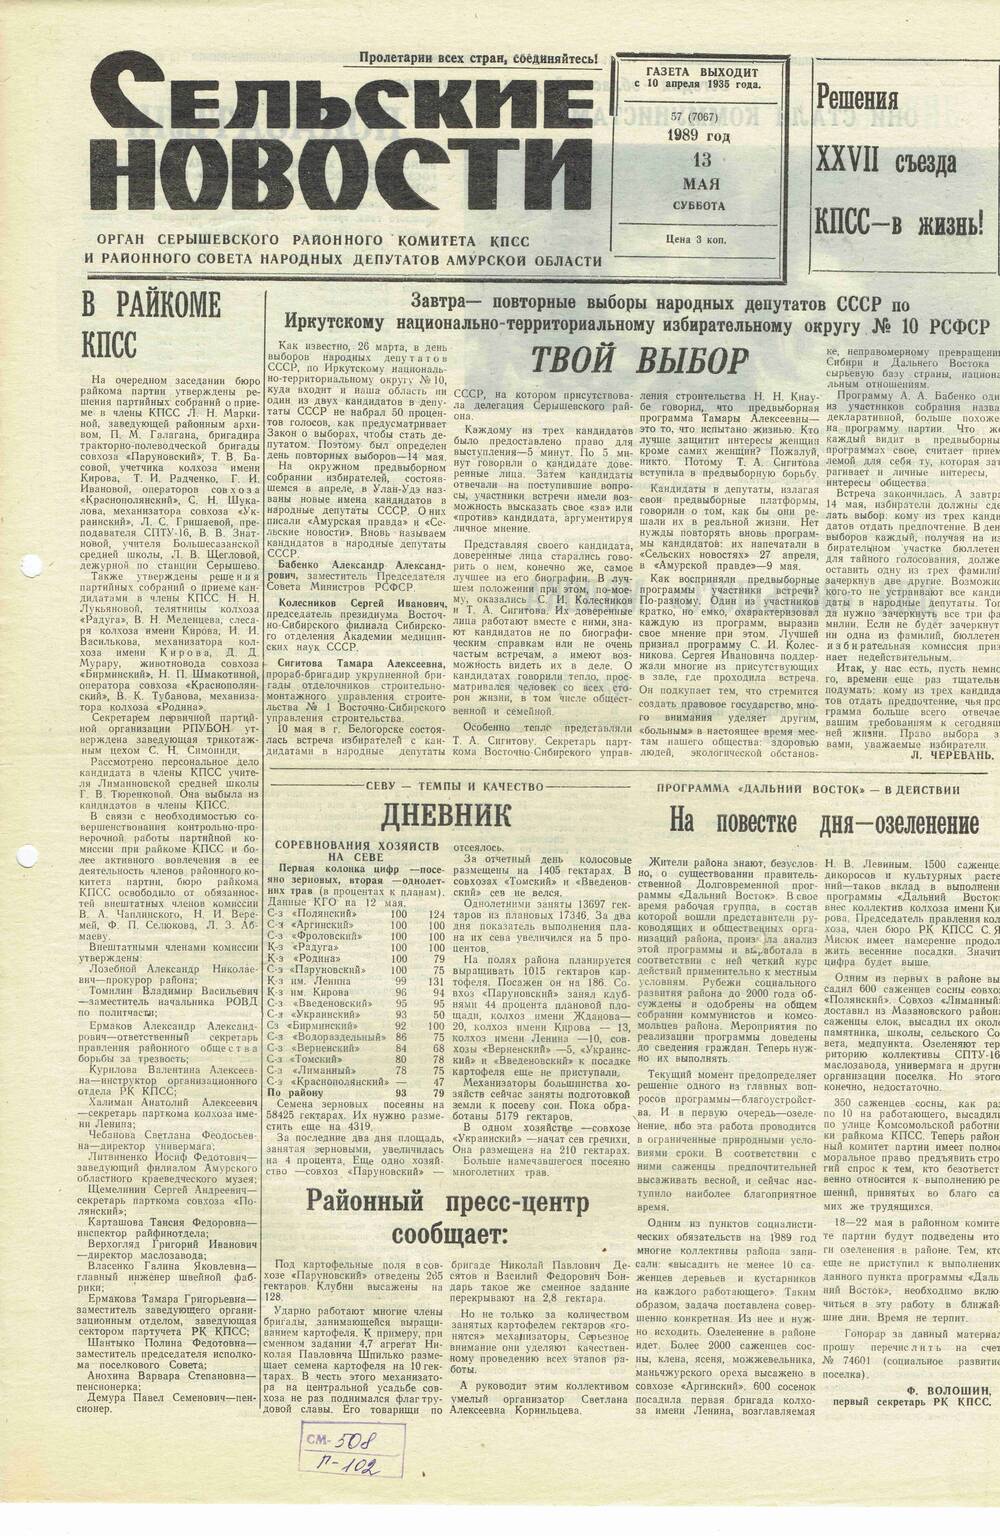 Газета «Сельские новости» №57 13.05.1989 года выпуска.